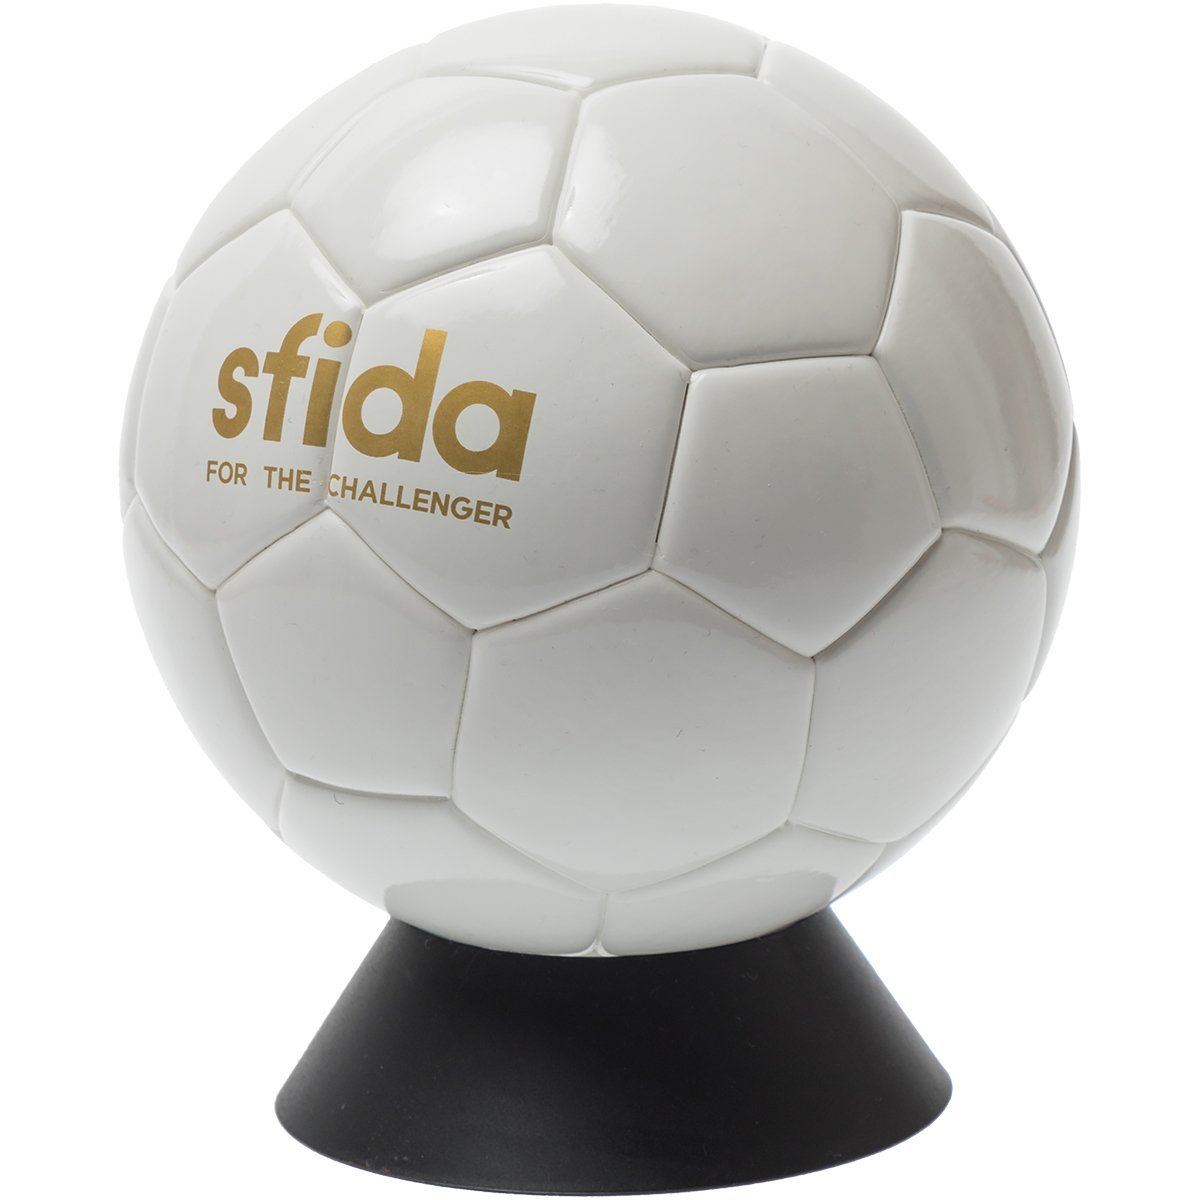 寄せ書きボール ミニボール サインサッカーボール Bsf S S Sfida Online Store